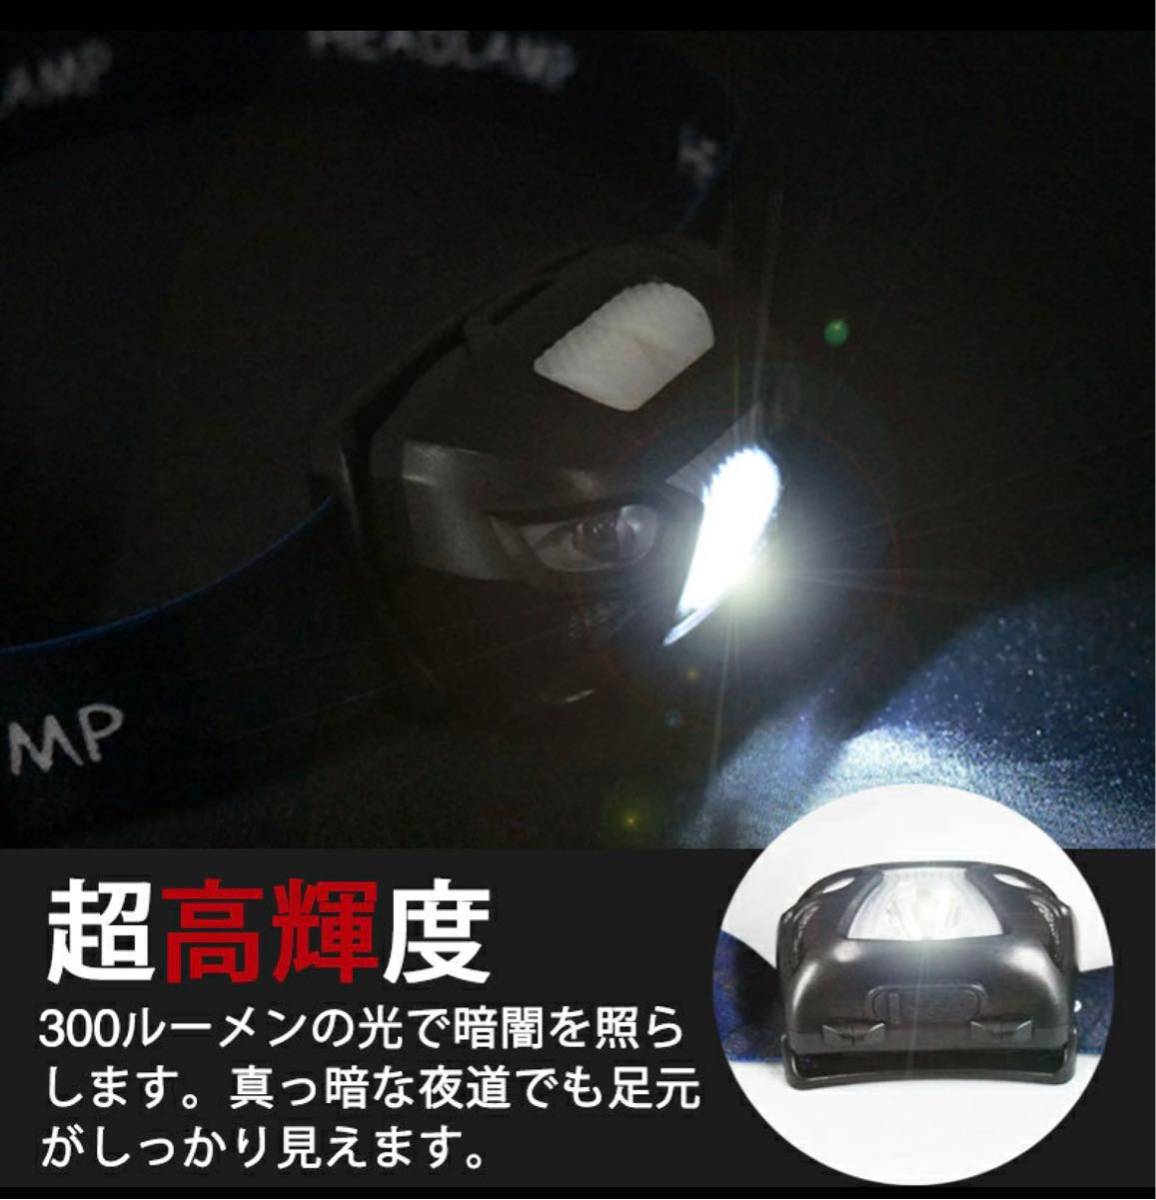 ヘッドライト 充電式 LED ヘッドランプ ヘルメット 防水 明るい軽量コンパクトハイブリッド 釣り センサー 充電式 usb充電防災 アウトドア 